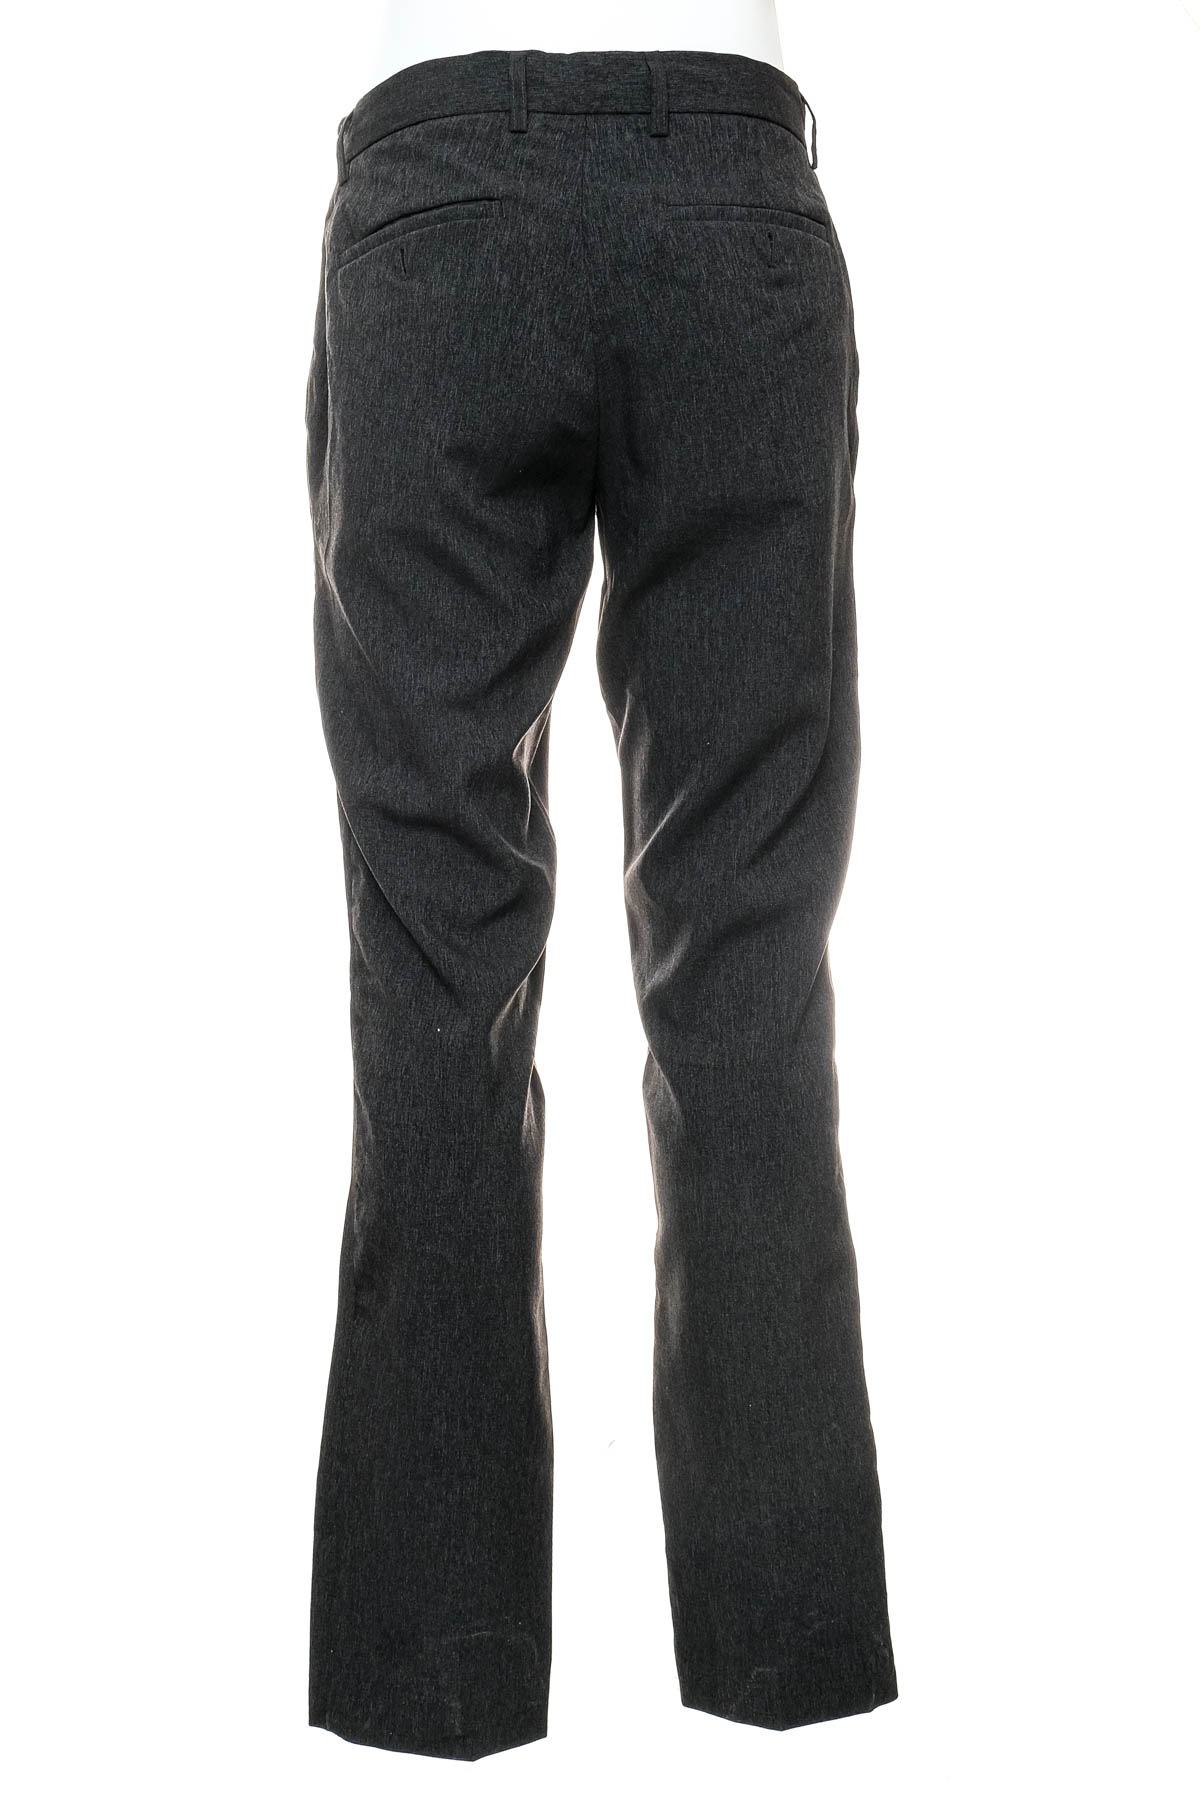 Men's trousers - Target - 1